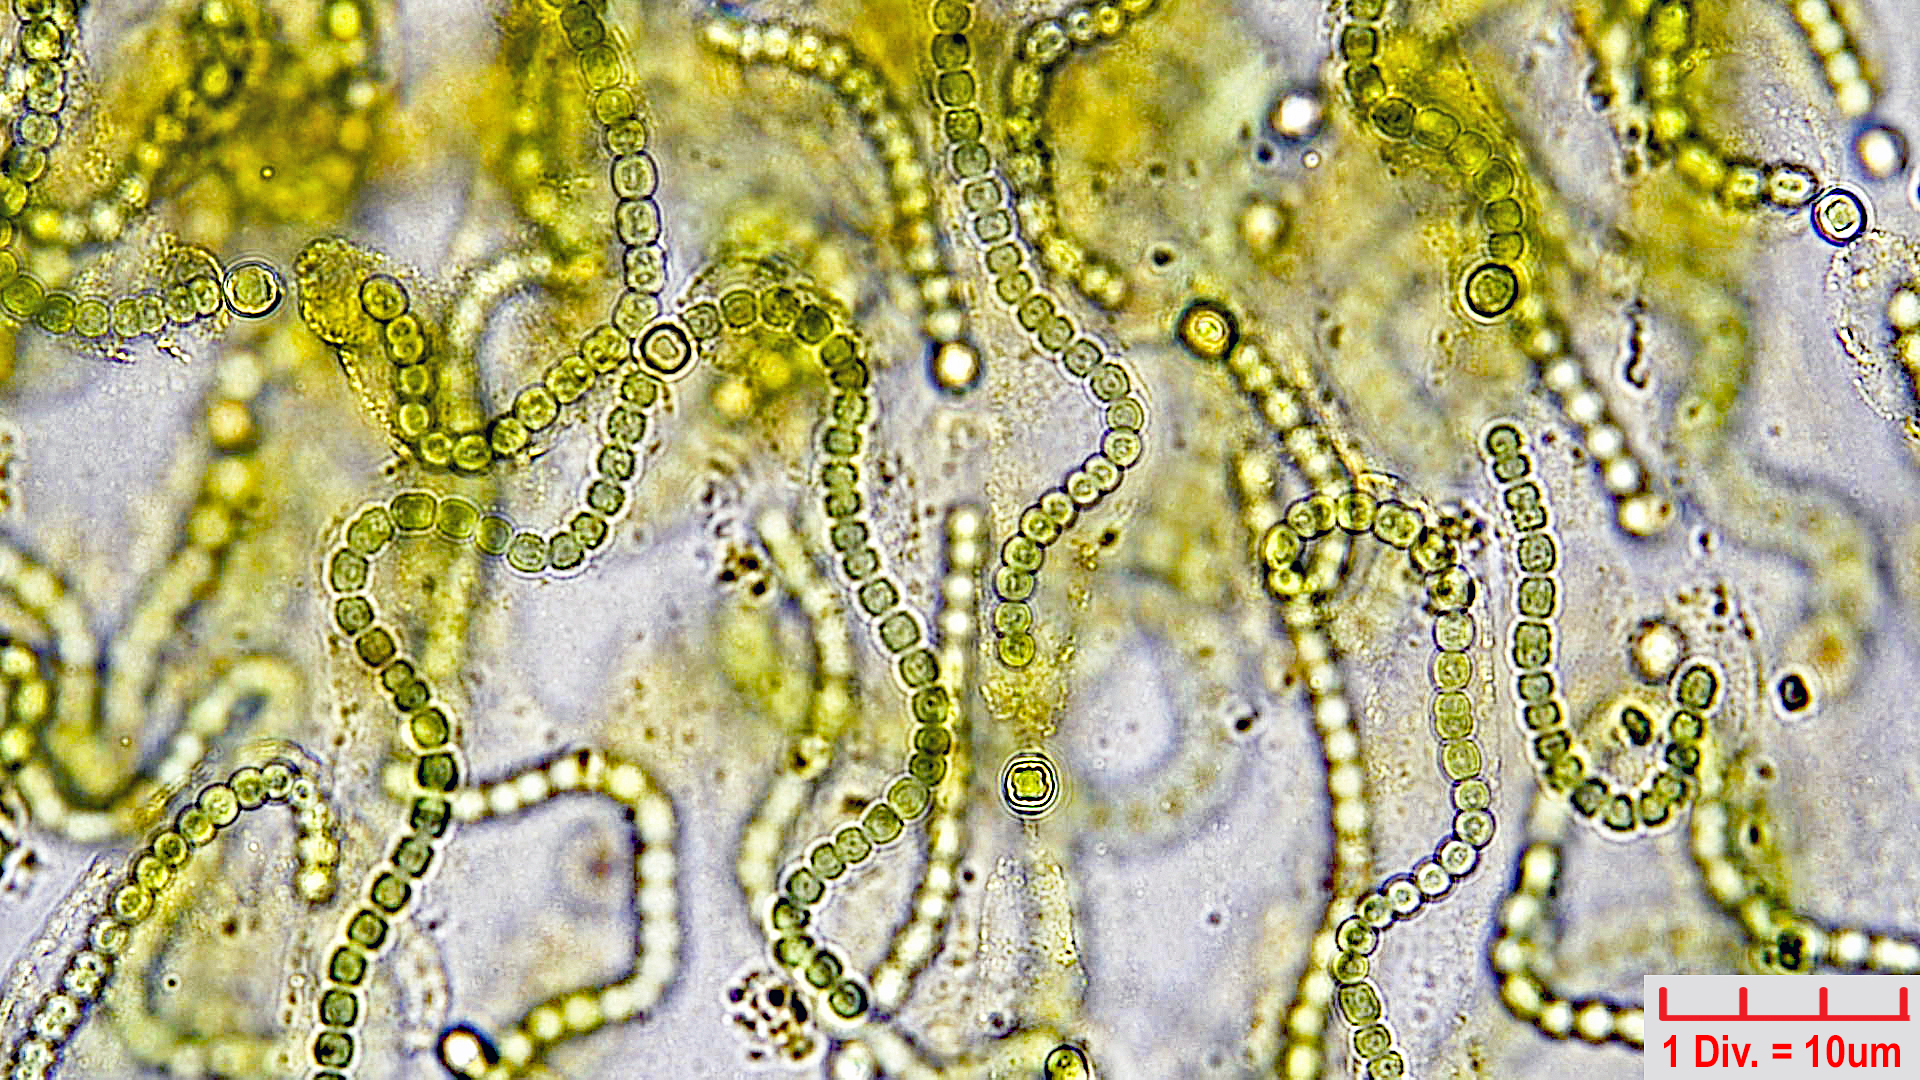 Cyanobacteria/Nostocales/Nostocaceae/Nostoc/pruniforme/nostoc-pruniforme-5.jpg